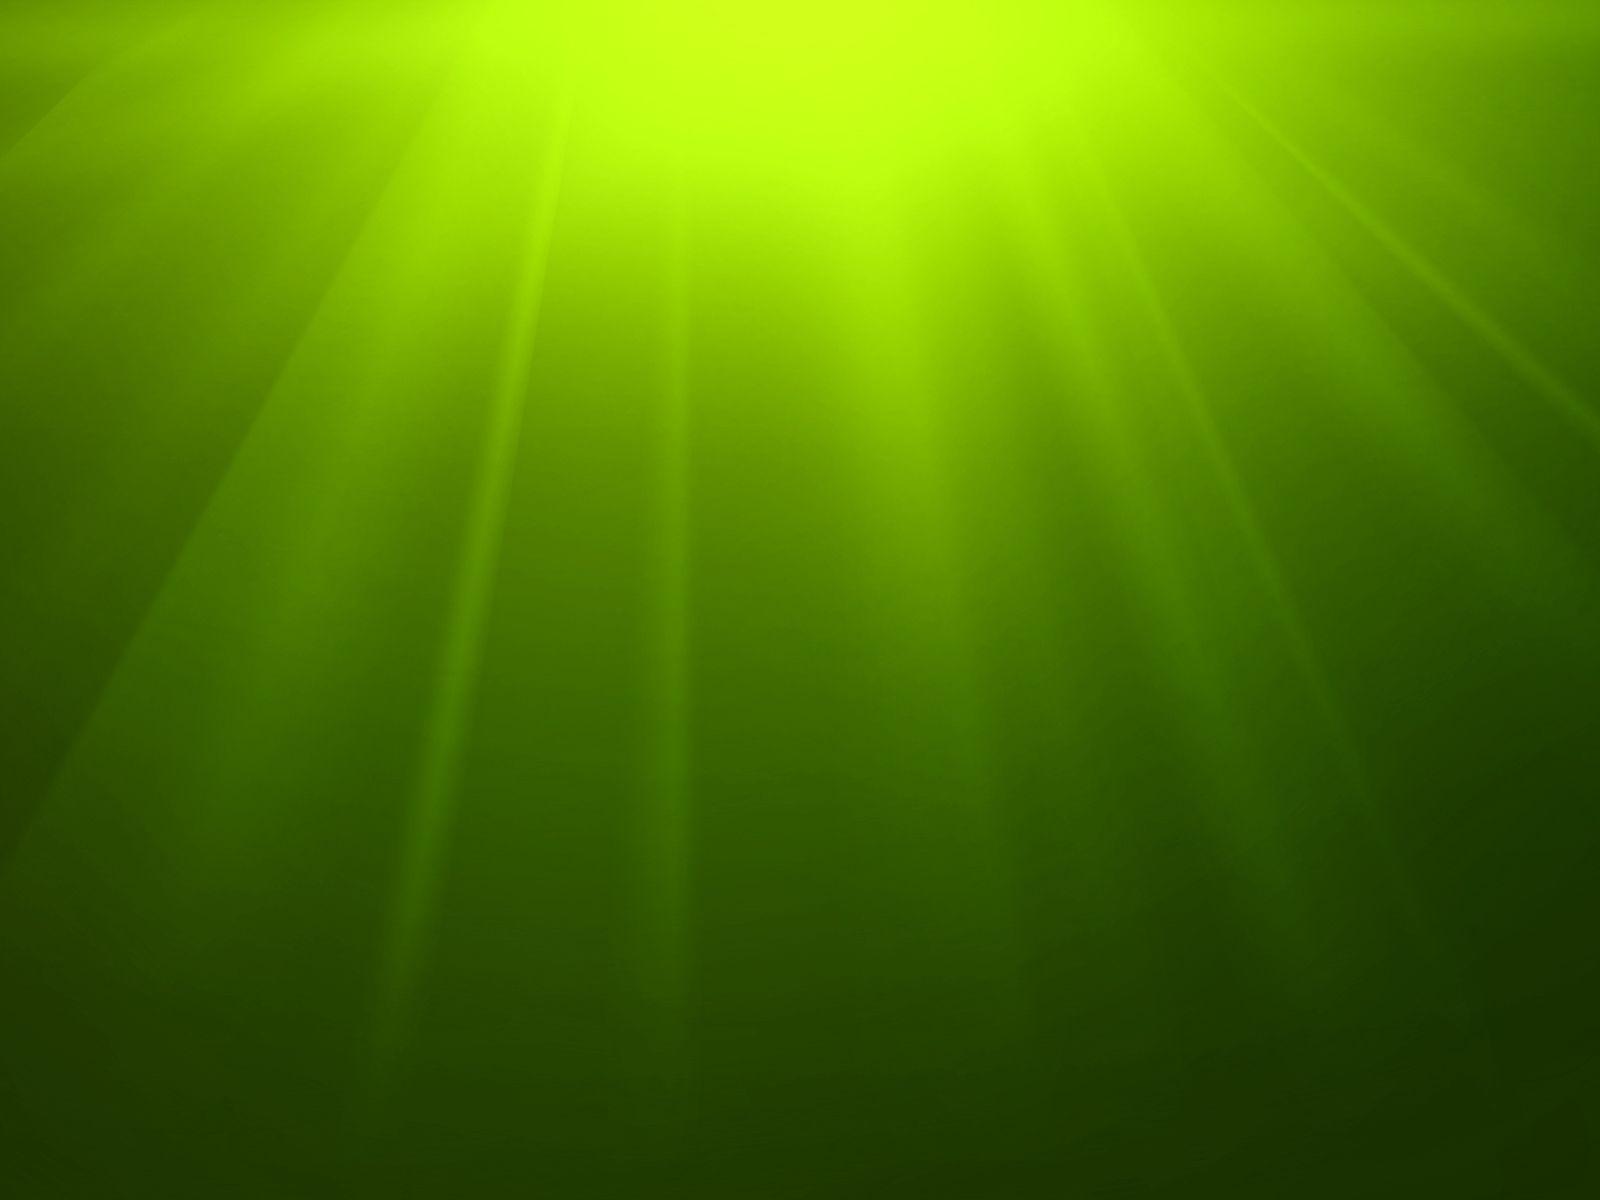 Green And Black Image 1 Desktop Background